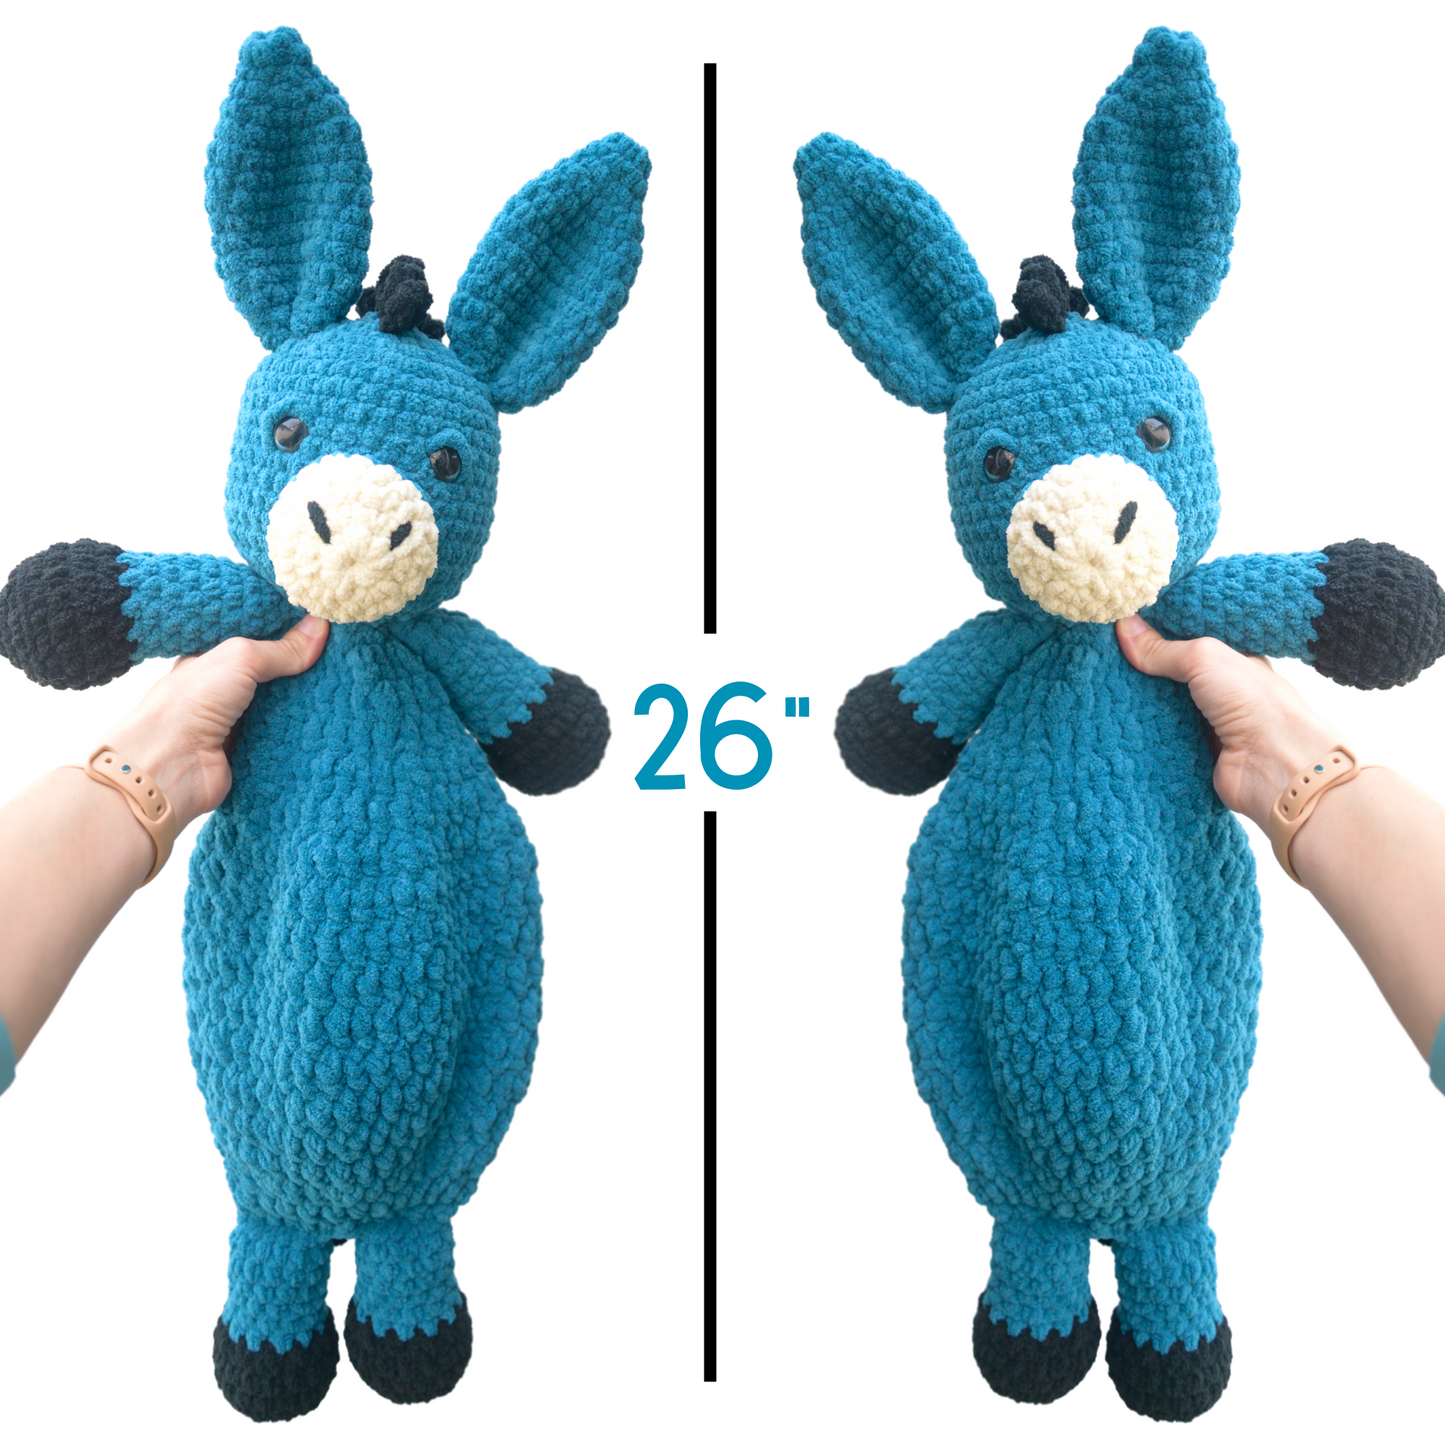 Crochet Donkey Pattern For Beginners PDF Download